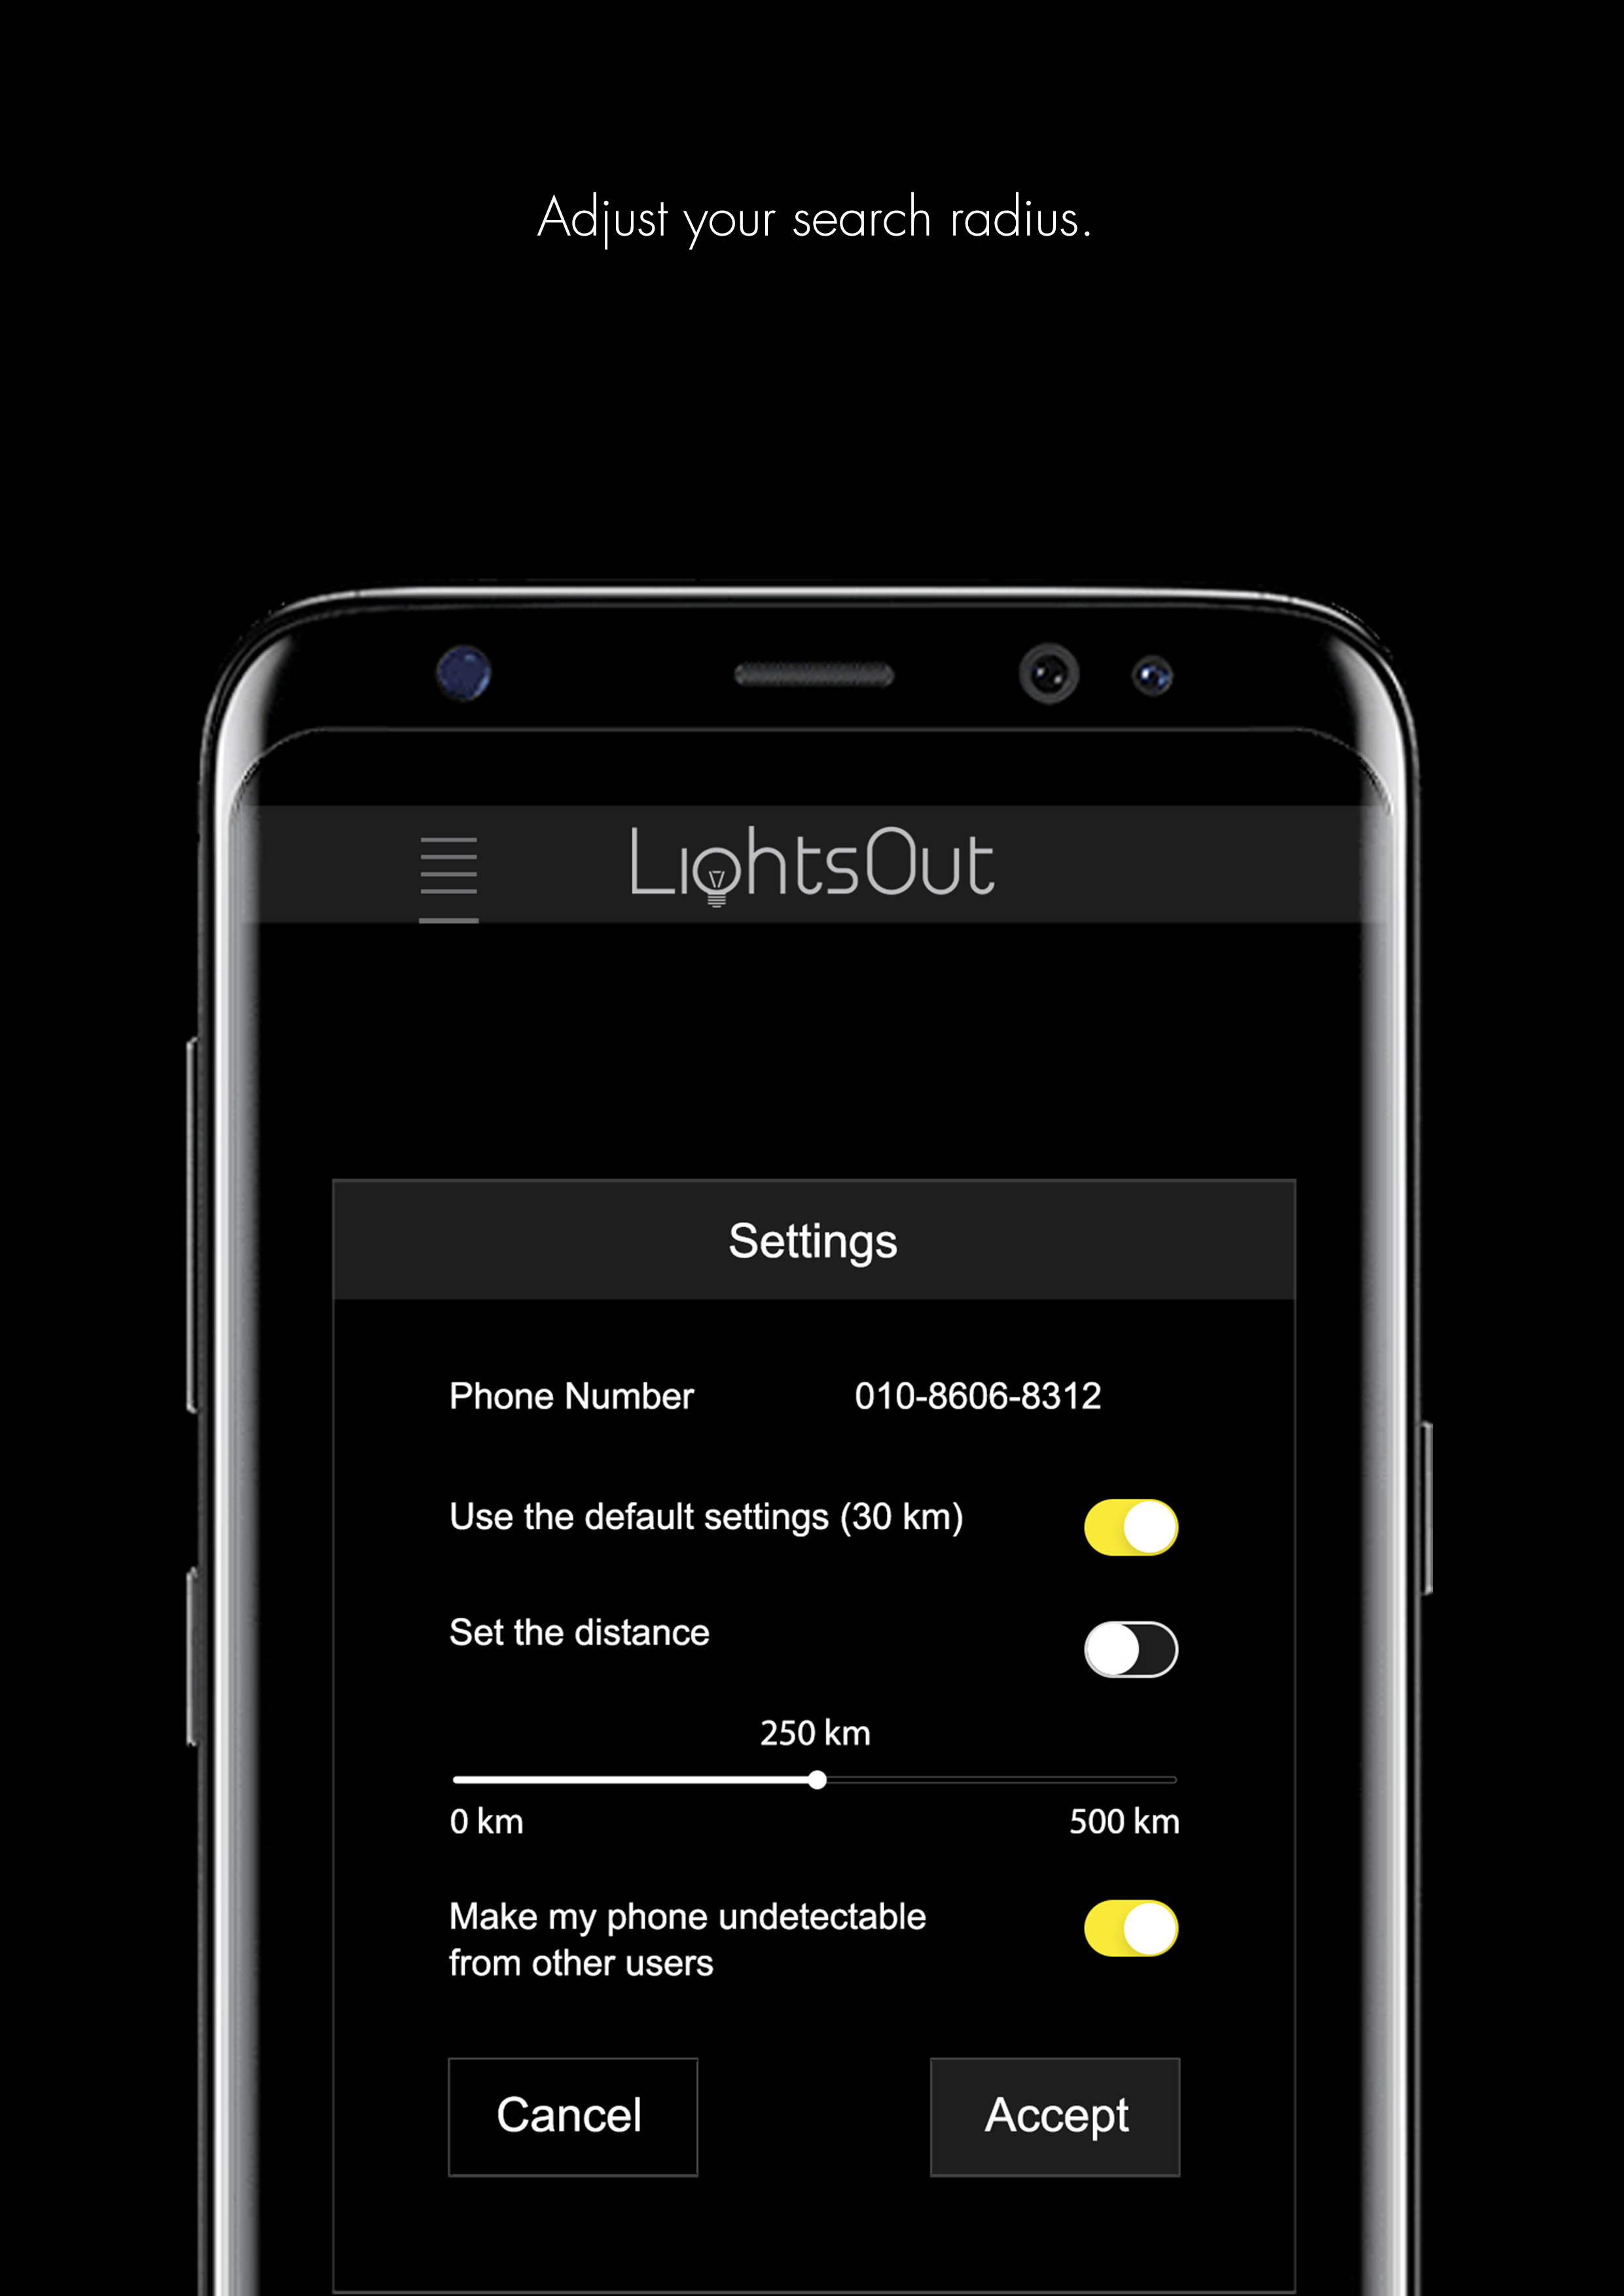 LightsOut settings